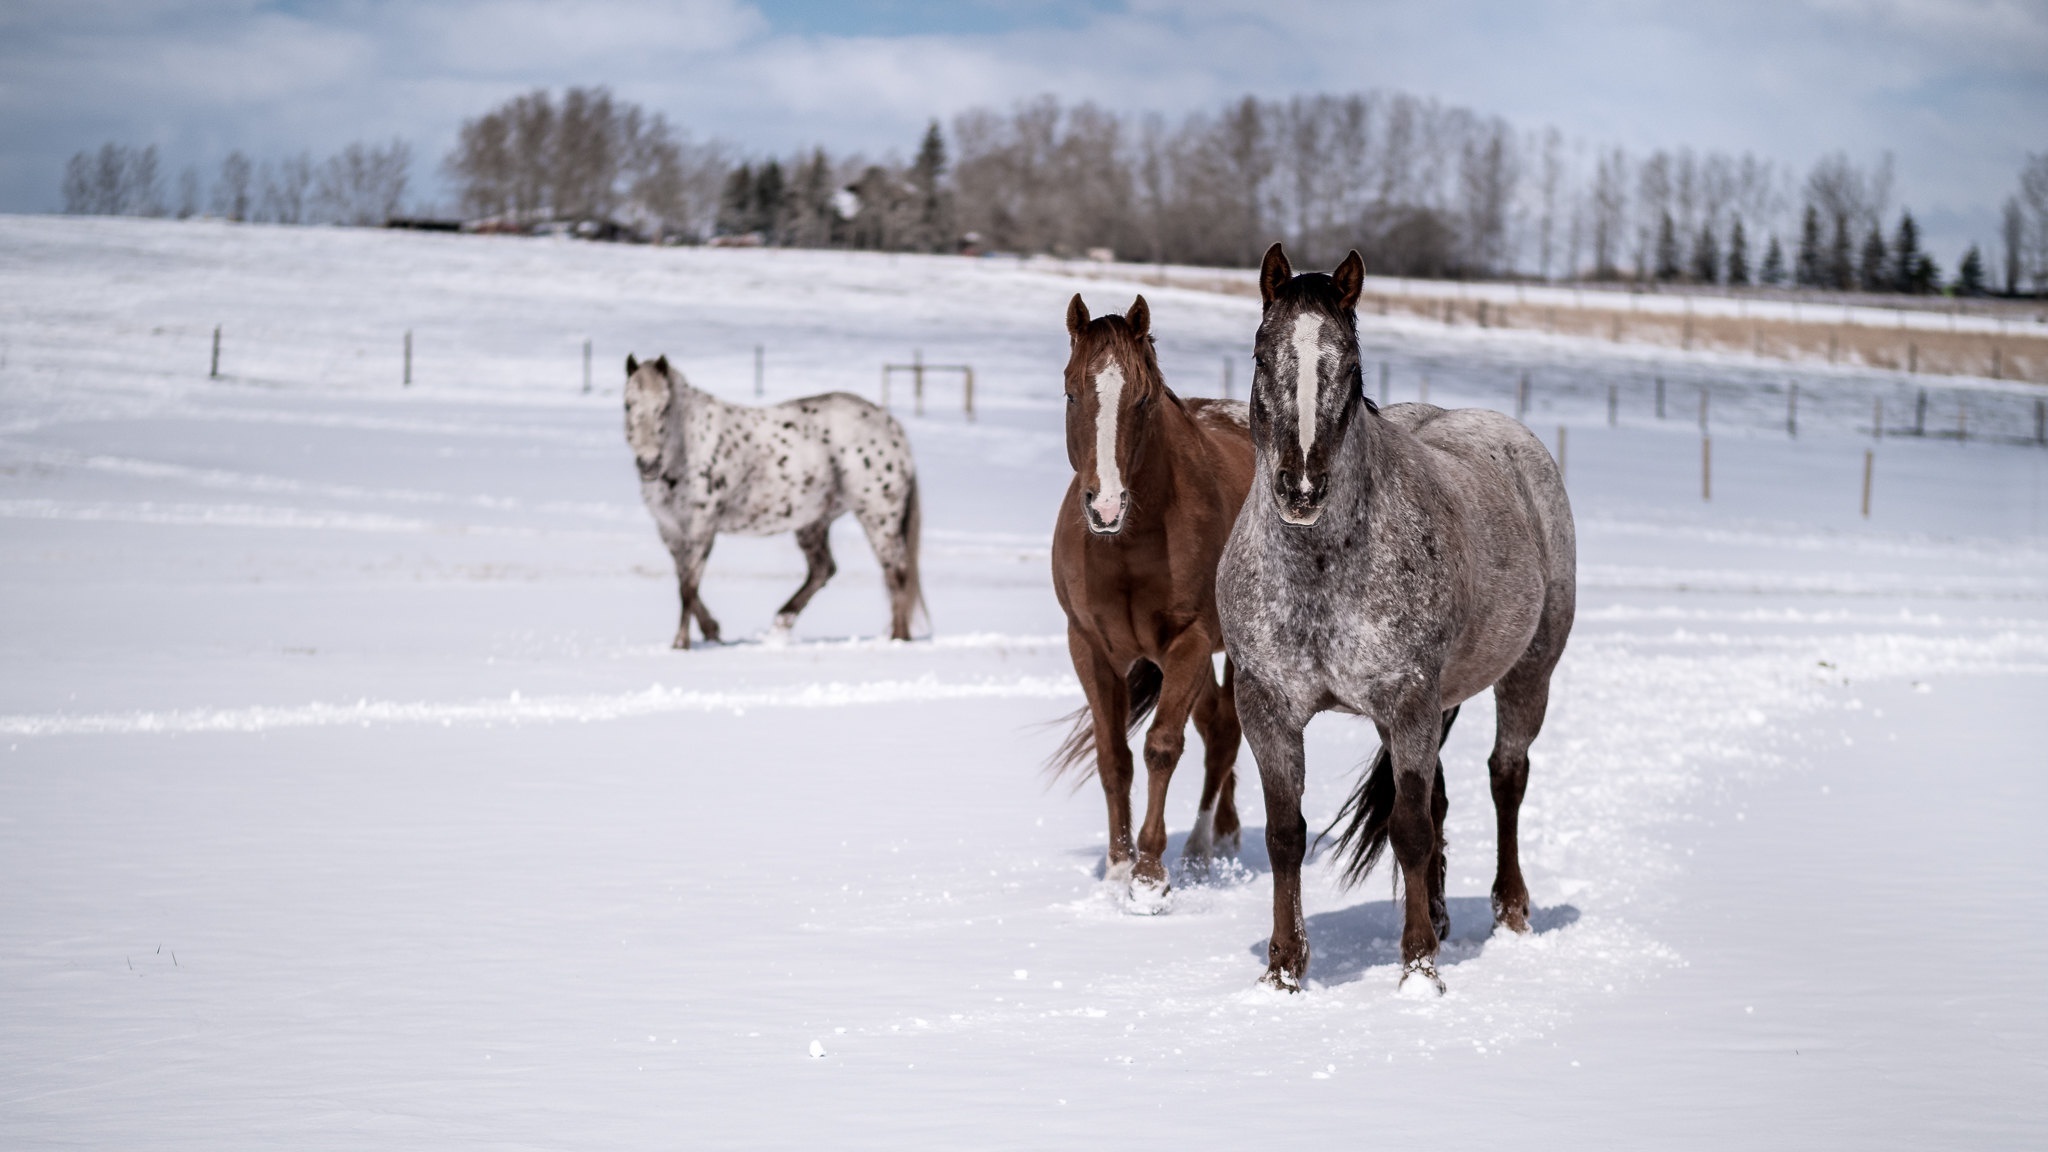 Horses in the snow, Stunning 4K wallpaper, Graceful creatures, Winter scenes, 2050x1160 HD Desktop